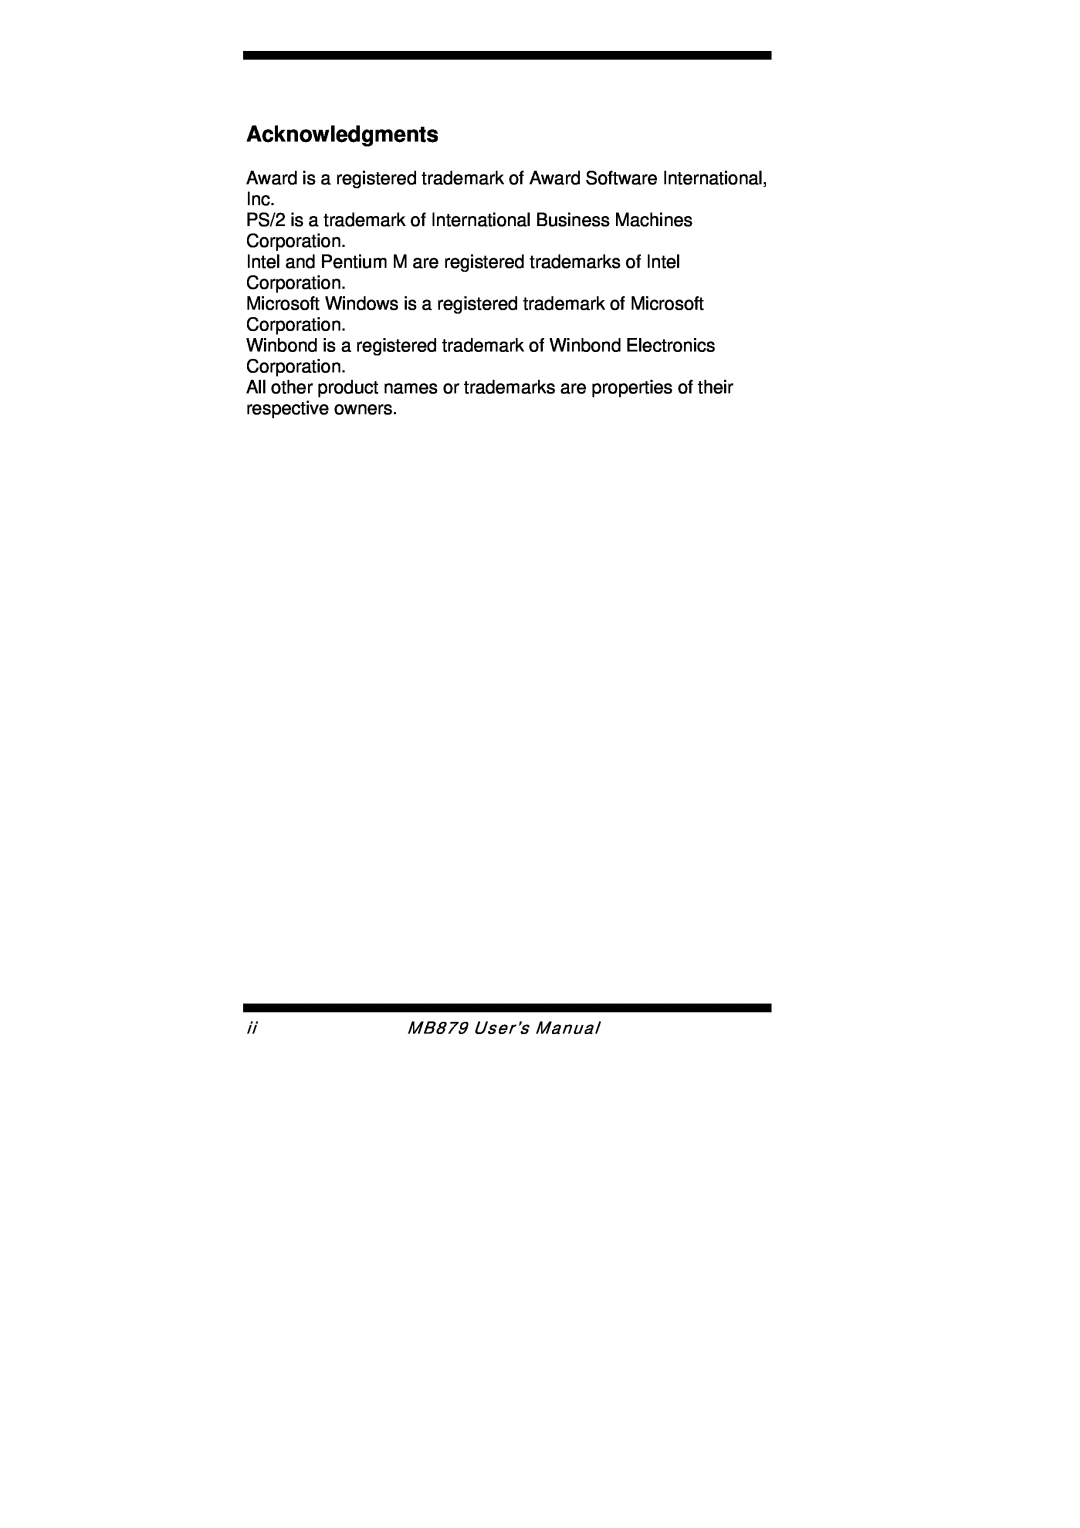 Intel user manual Acknowledgments, MB879 User’s Manual 